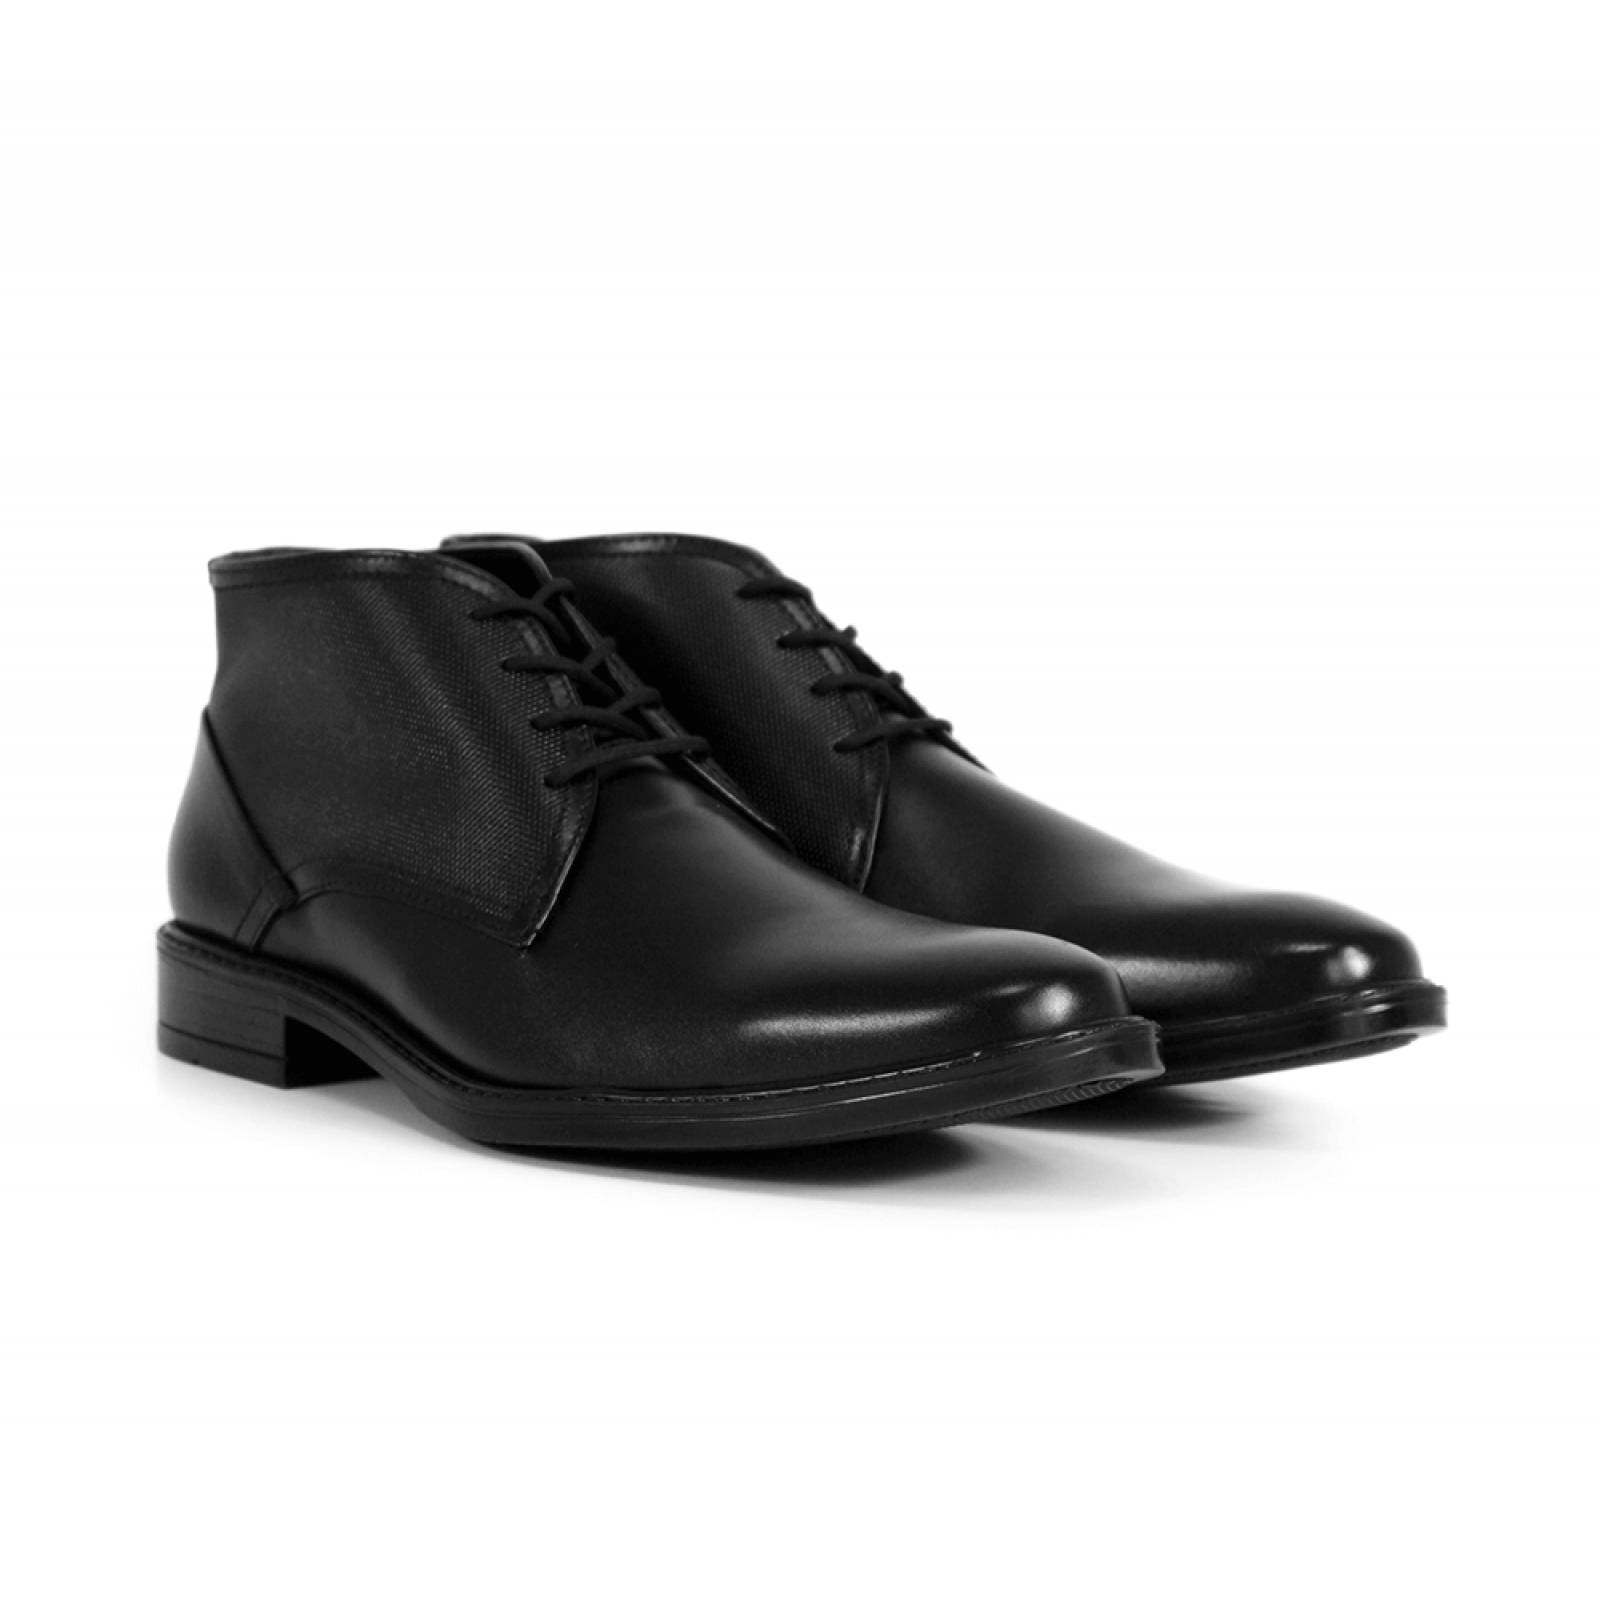 Zapato Vestir Hombre Flexi Negro 02503726 Piel – SALVAJE TENTACIÓN